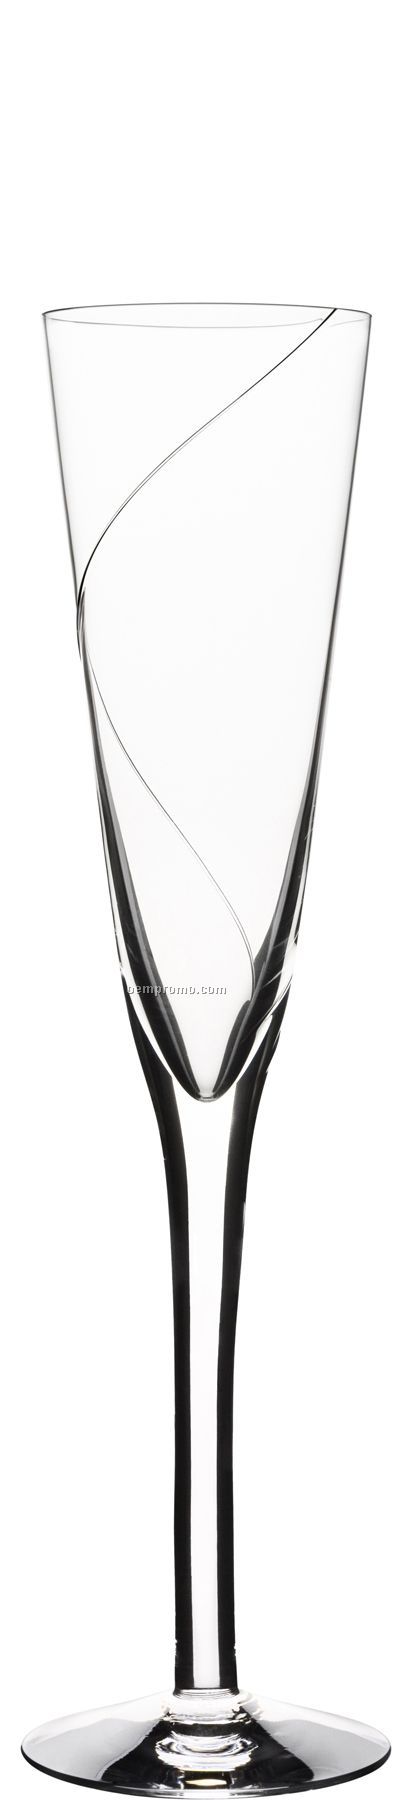 Line Glass Champagne Flute Stemware W/ Swirl Design By Anna Ehrner